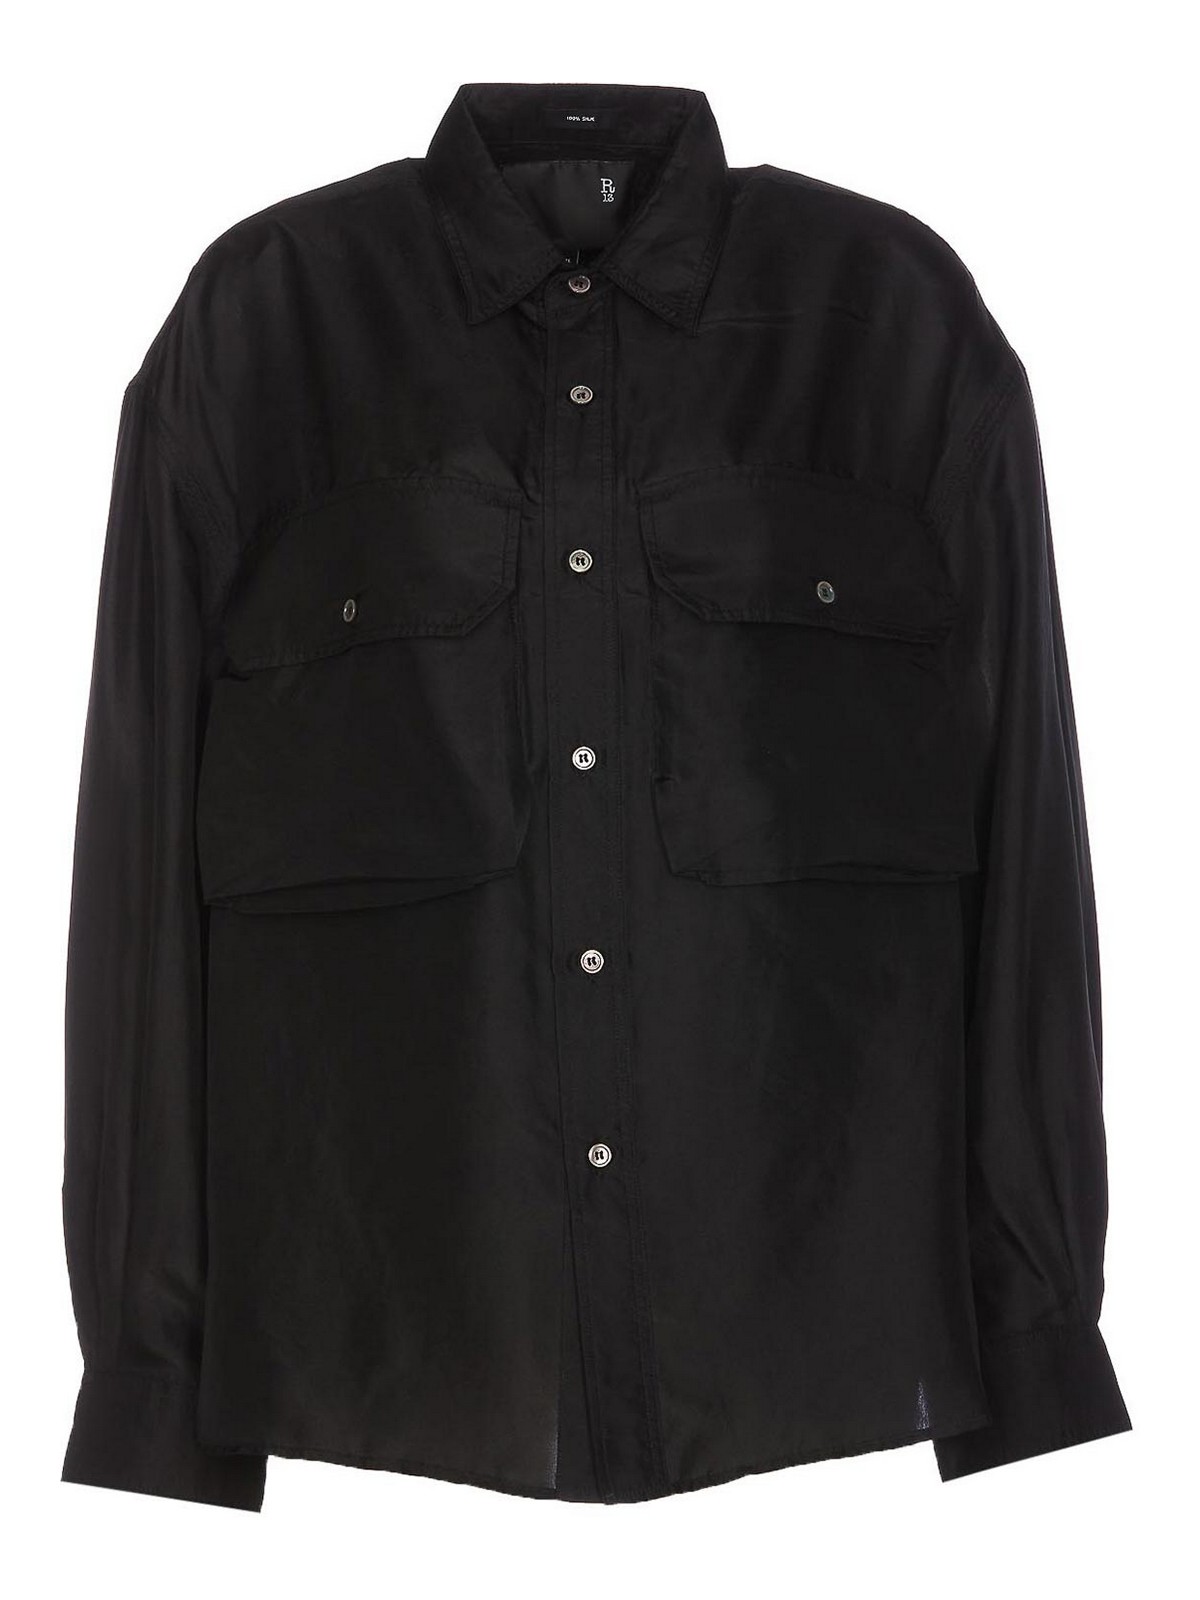 R13 Oversize Pocket Shirt In Black